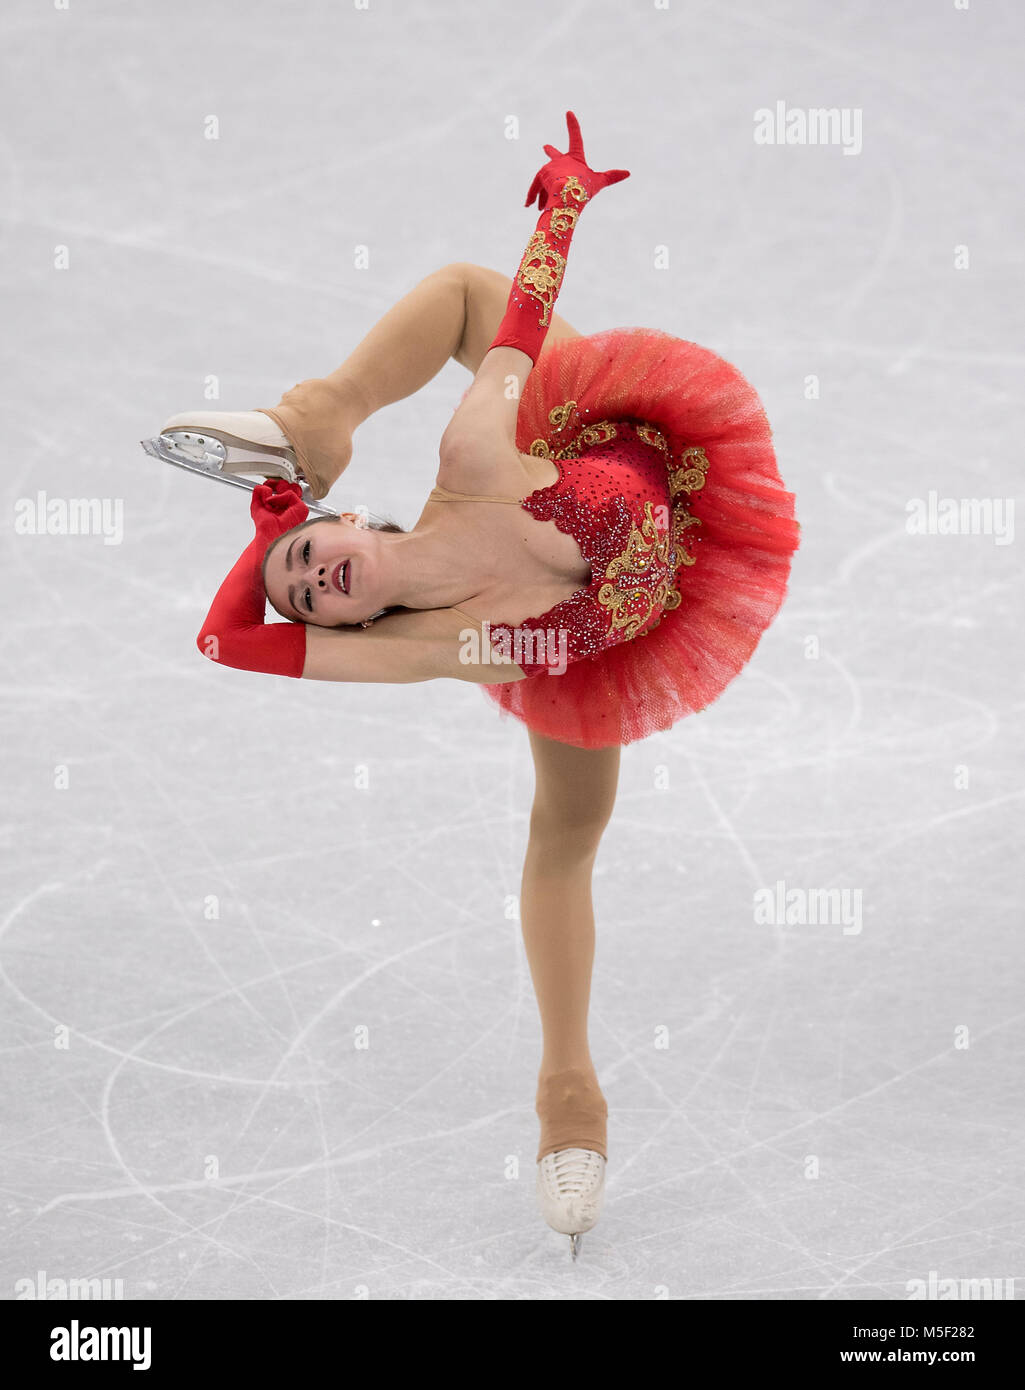 Alina ZAGITOVA, OAR / RUS, Aktion, Eiskunstlaufen Kuer der Frauen am 23.02.2018 Olympische Winterspiele 2018, vom 09.02. - 25.02.2018 in PyeongChang/ Suedkorea. |usage worldwide Stock Photo